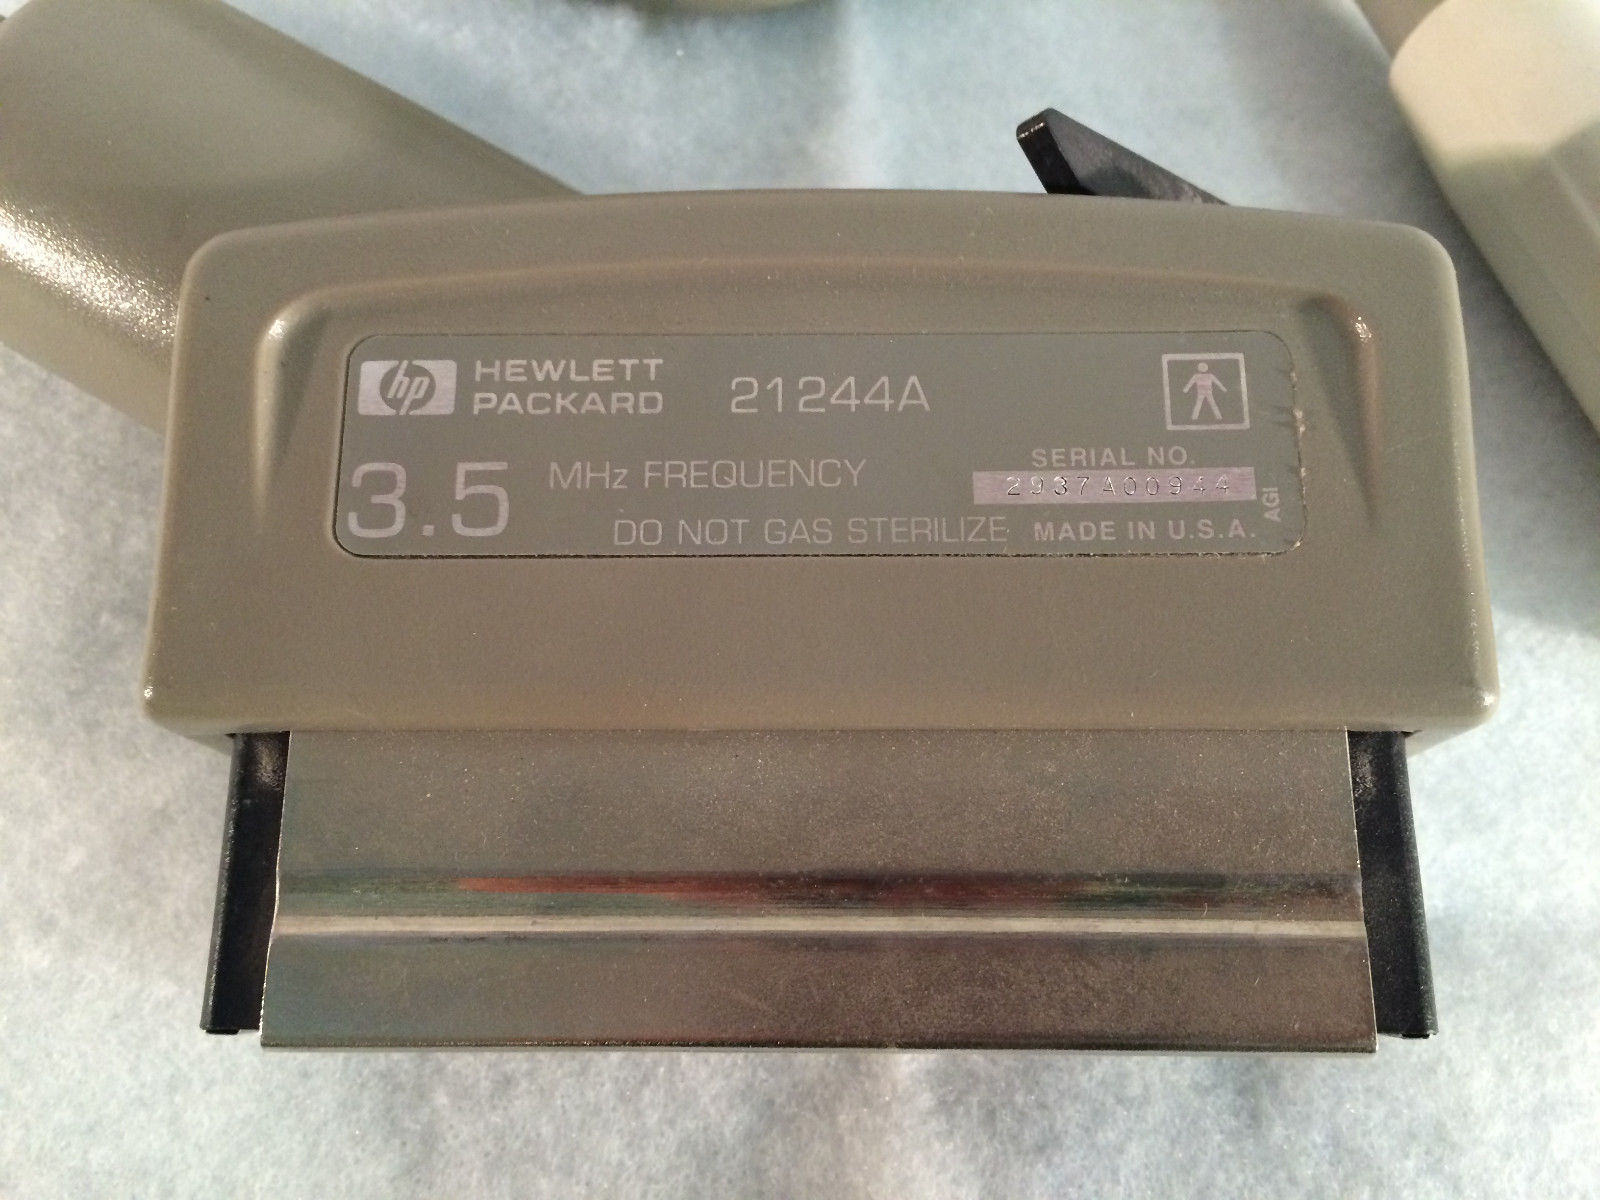 HP Hewlett Packard 21244A 3.5MHz Ultrasound Transducer